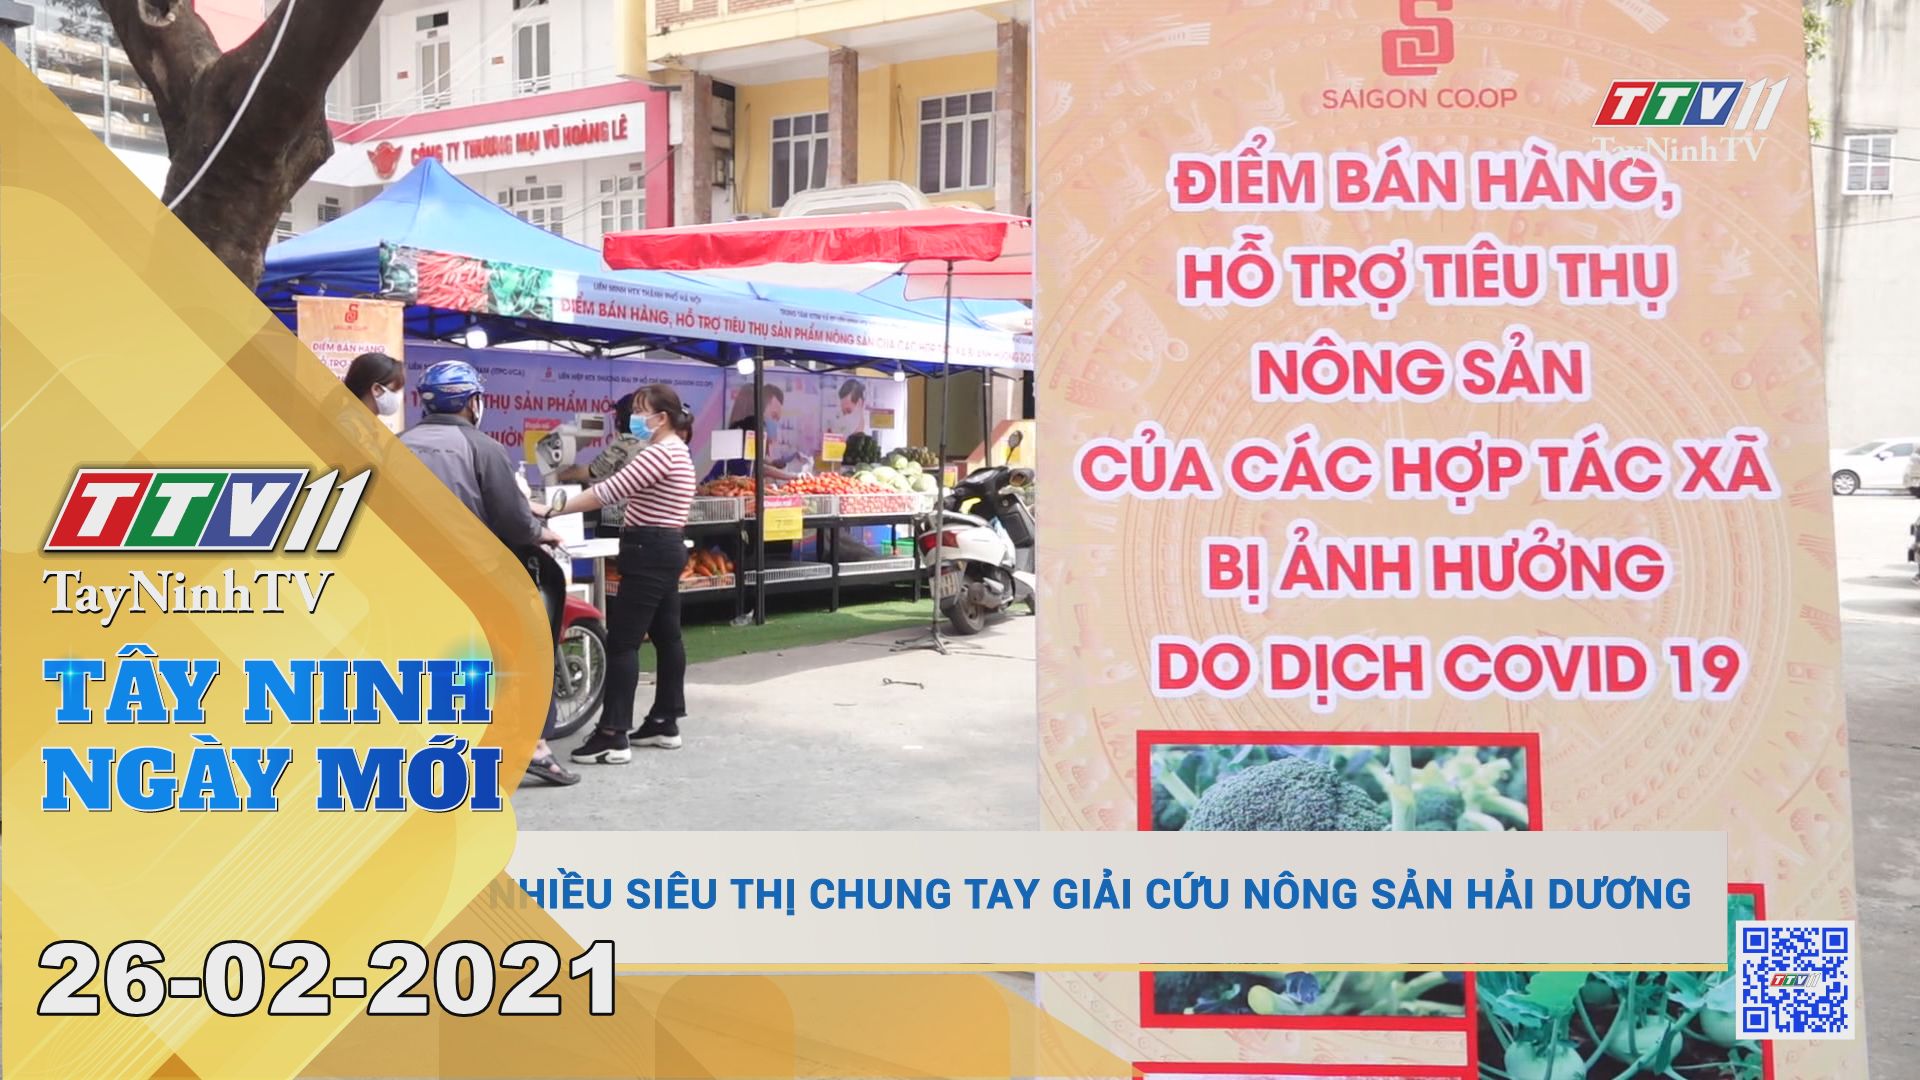 Tây Ninh Ngày Mới 26-02-2021 | Tin tức hôm nay | TayNinhTV